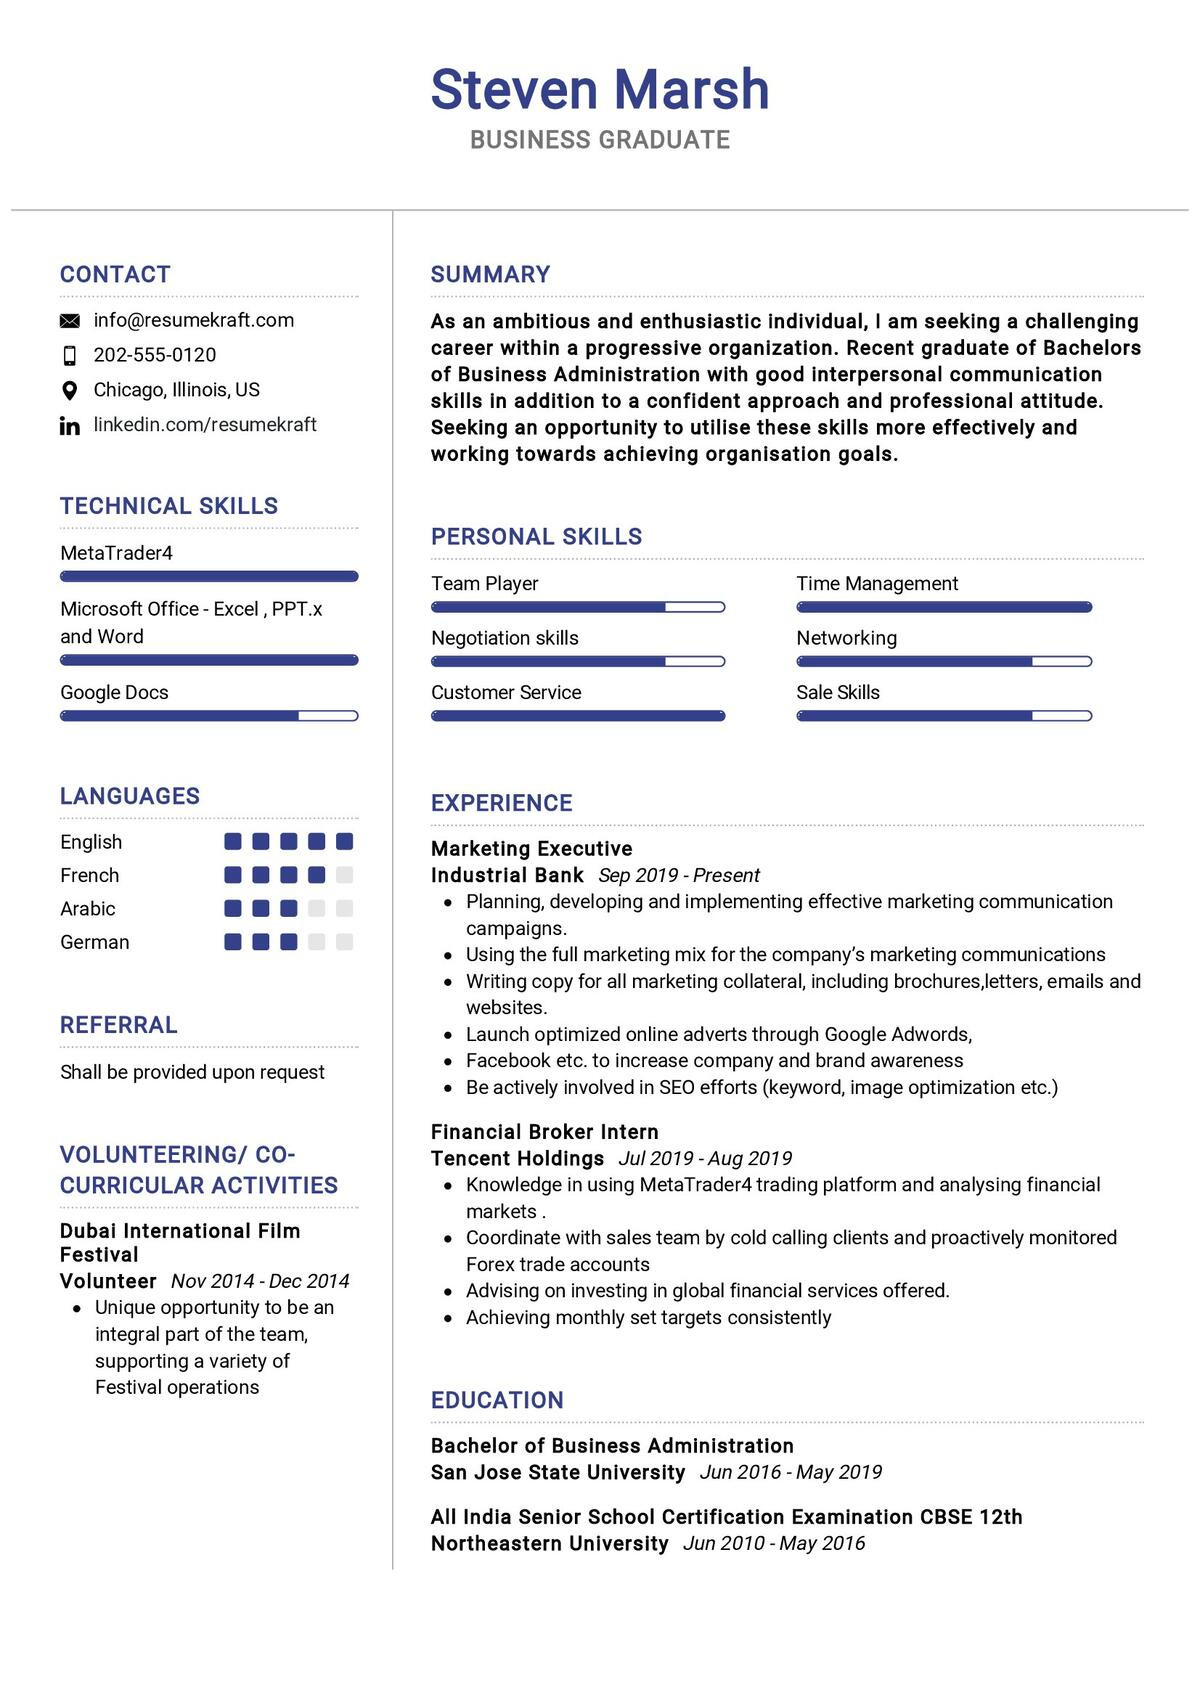 Resume Sample for Business Administration Graduate Business Graduate Resume Sample 2021 Writing Tips – Resumekraft